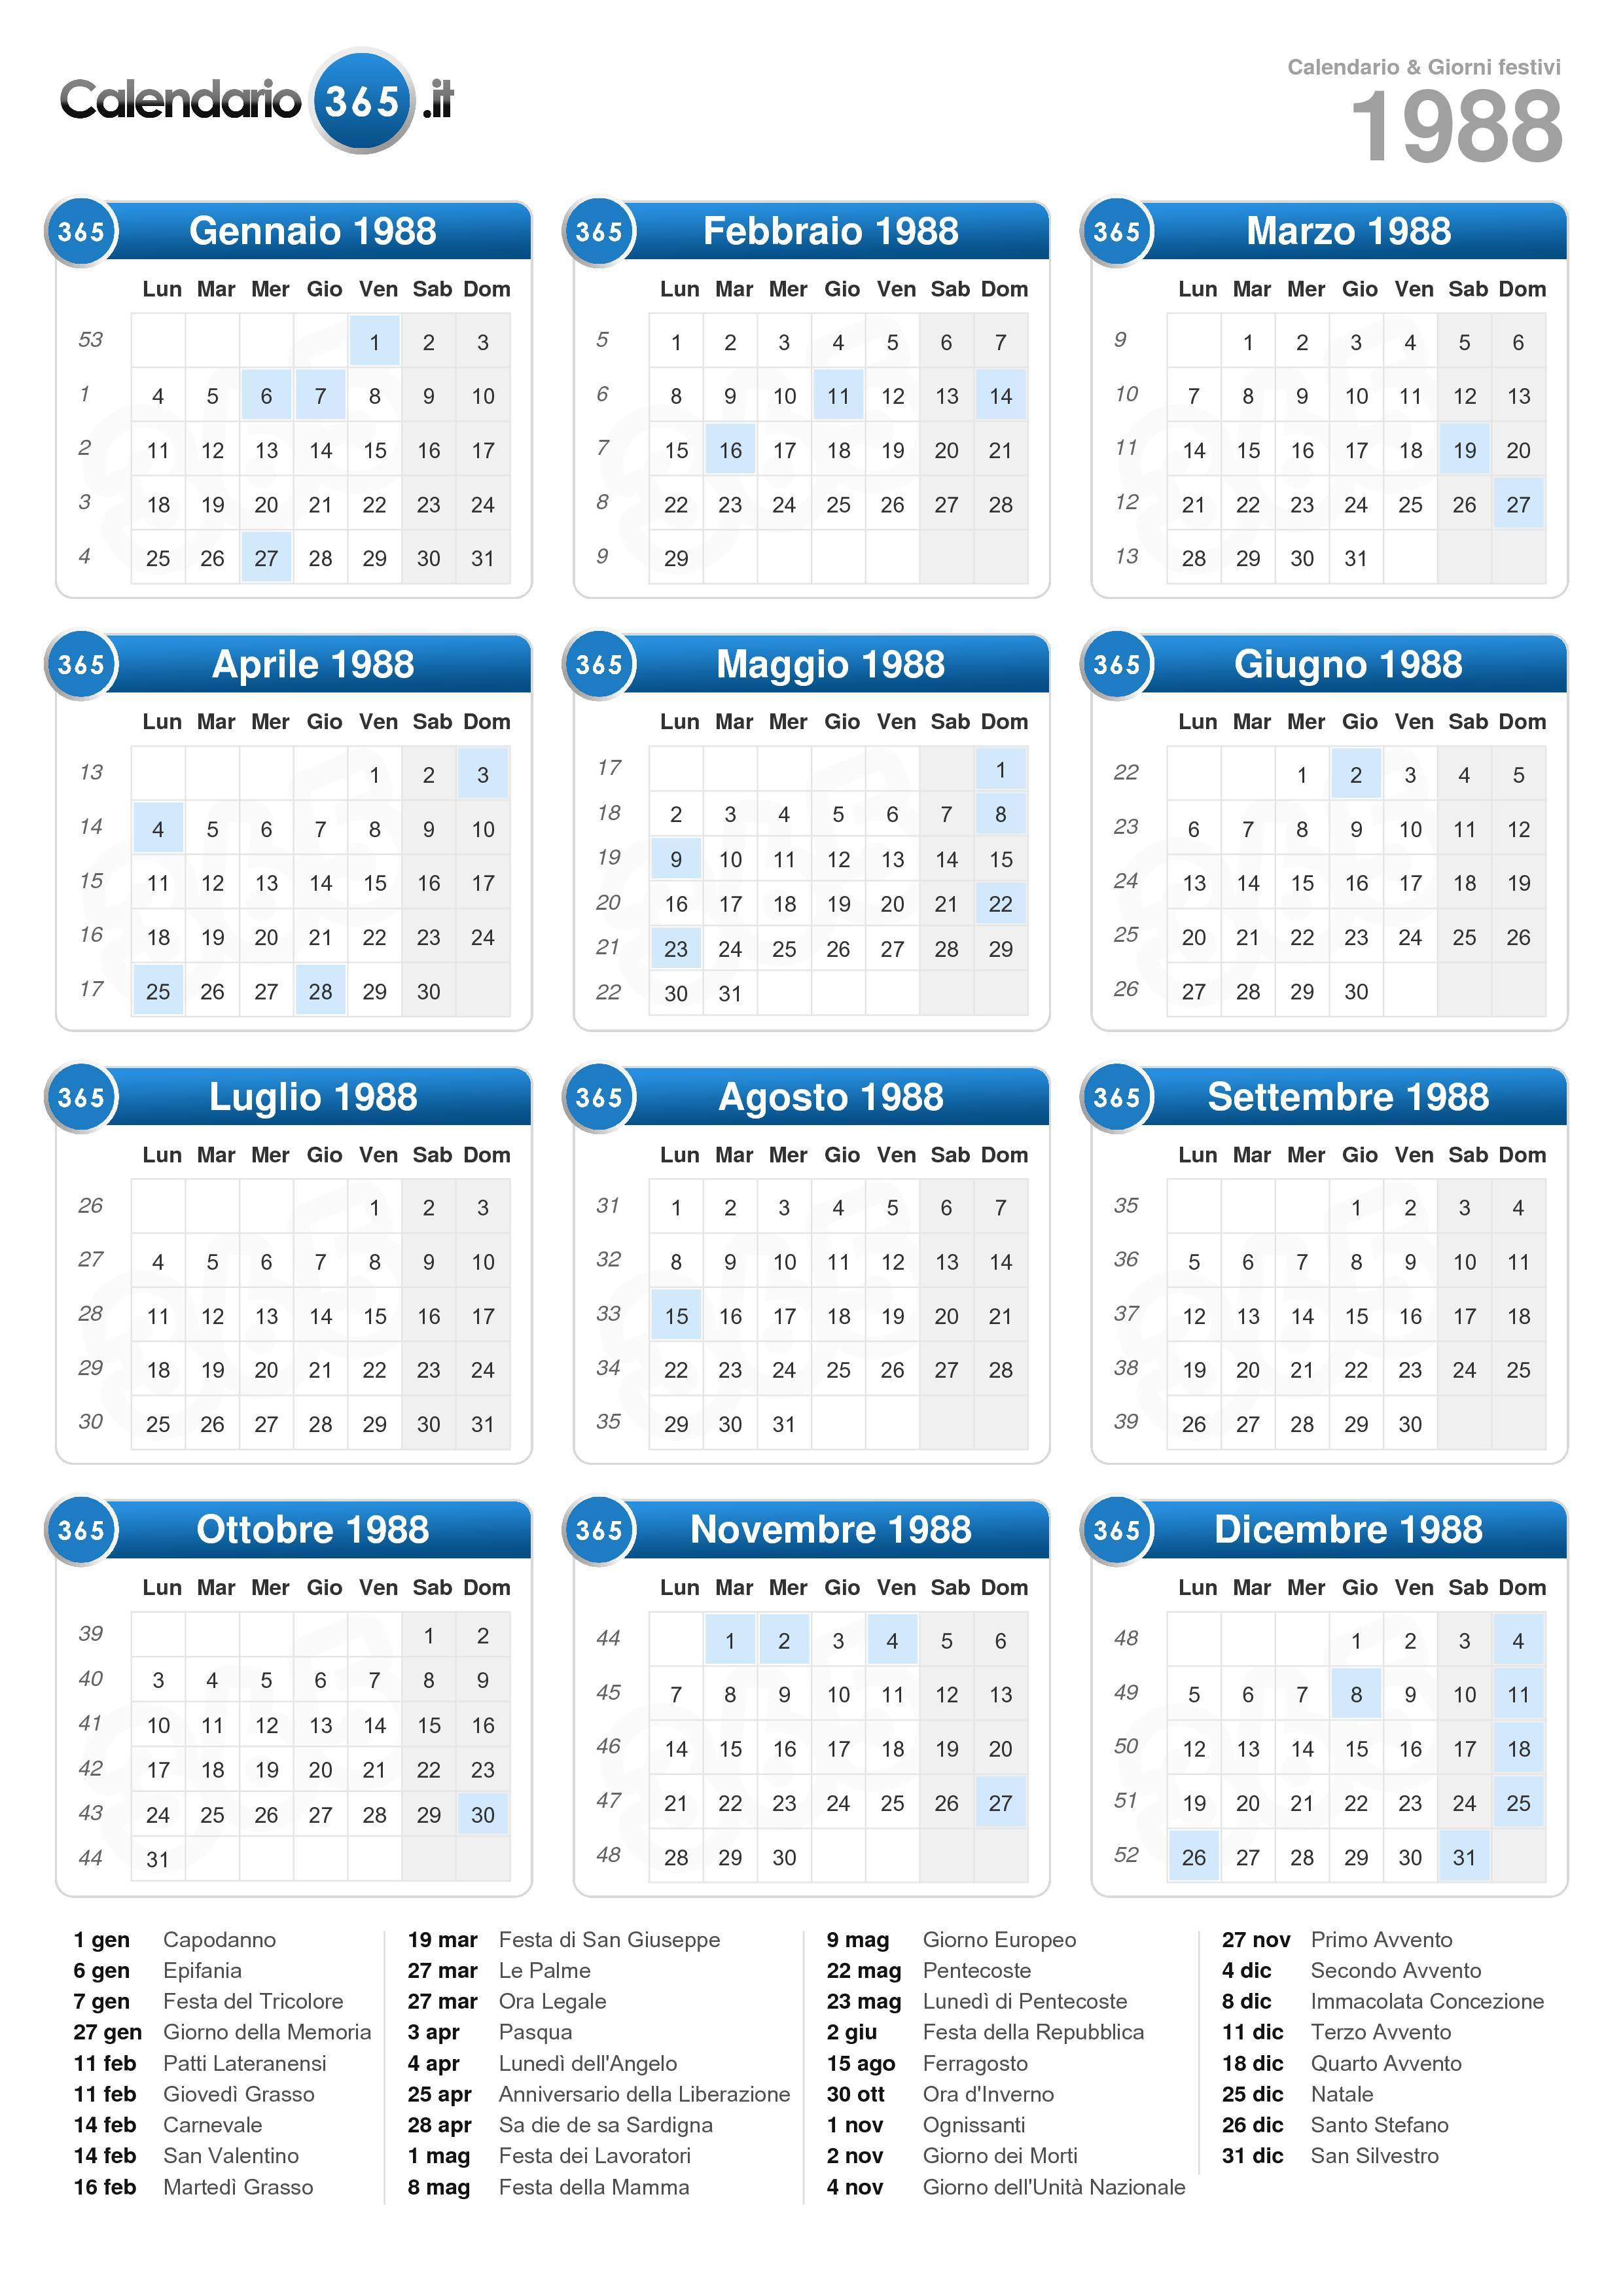 Cronologia Cronografia e Calendario Perpetuo Sesta Ed. Capellii 1988  #8820316870